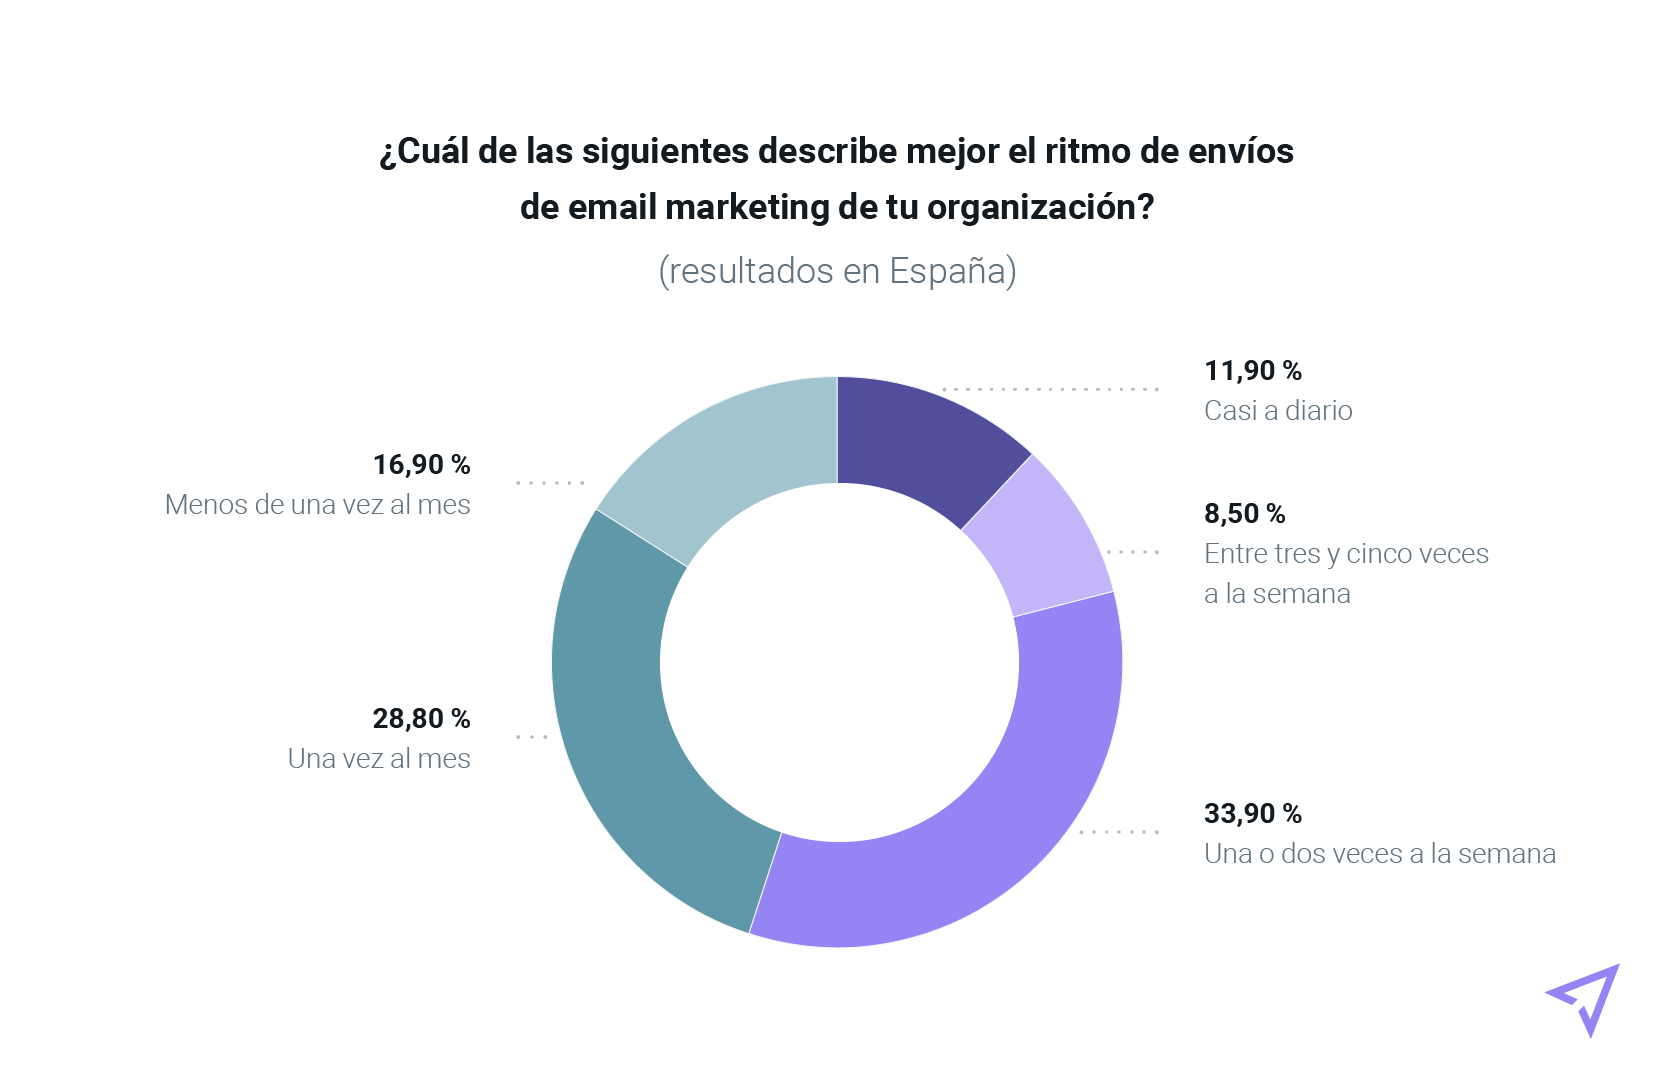 Gráfica con los resultados españoles sobre la cadencia de envío de email marketing de sus organizaciones.